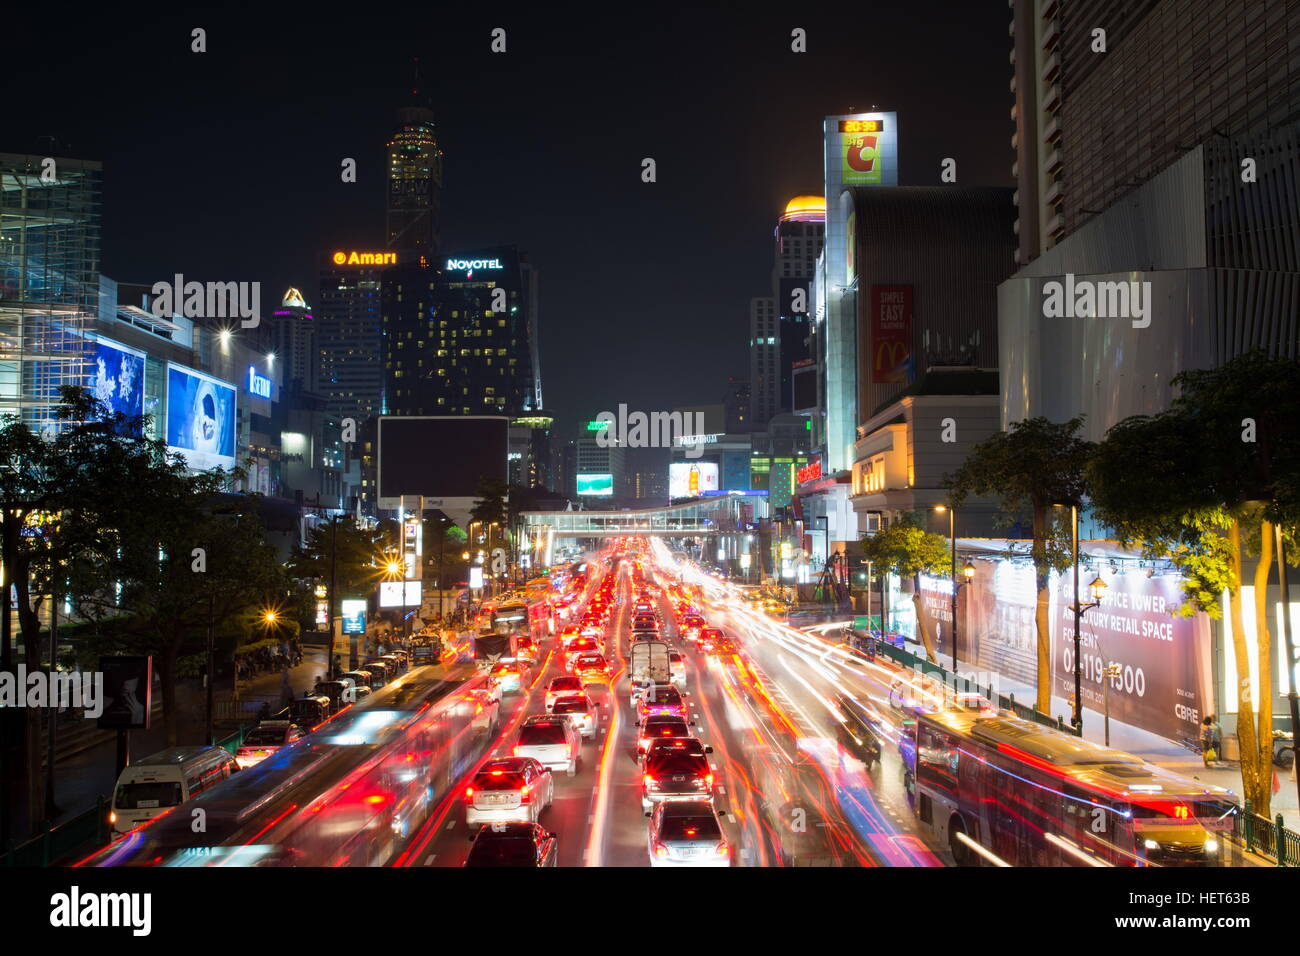 BANGKOK, THAILAND - 13. Oktober 2016: Blick auf den Siam Square Nachtverkehr mit Lichtspuren. Dieser Platz ist berühmte Einkaufsviertel in Bangkok Stockfoto